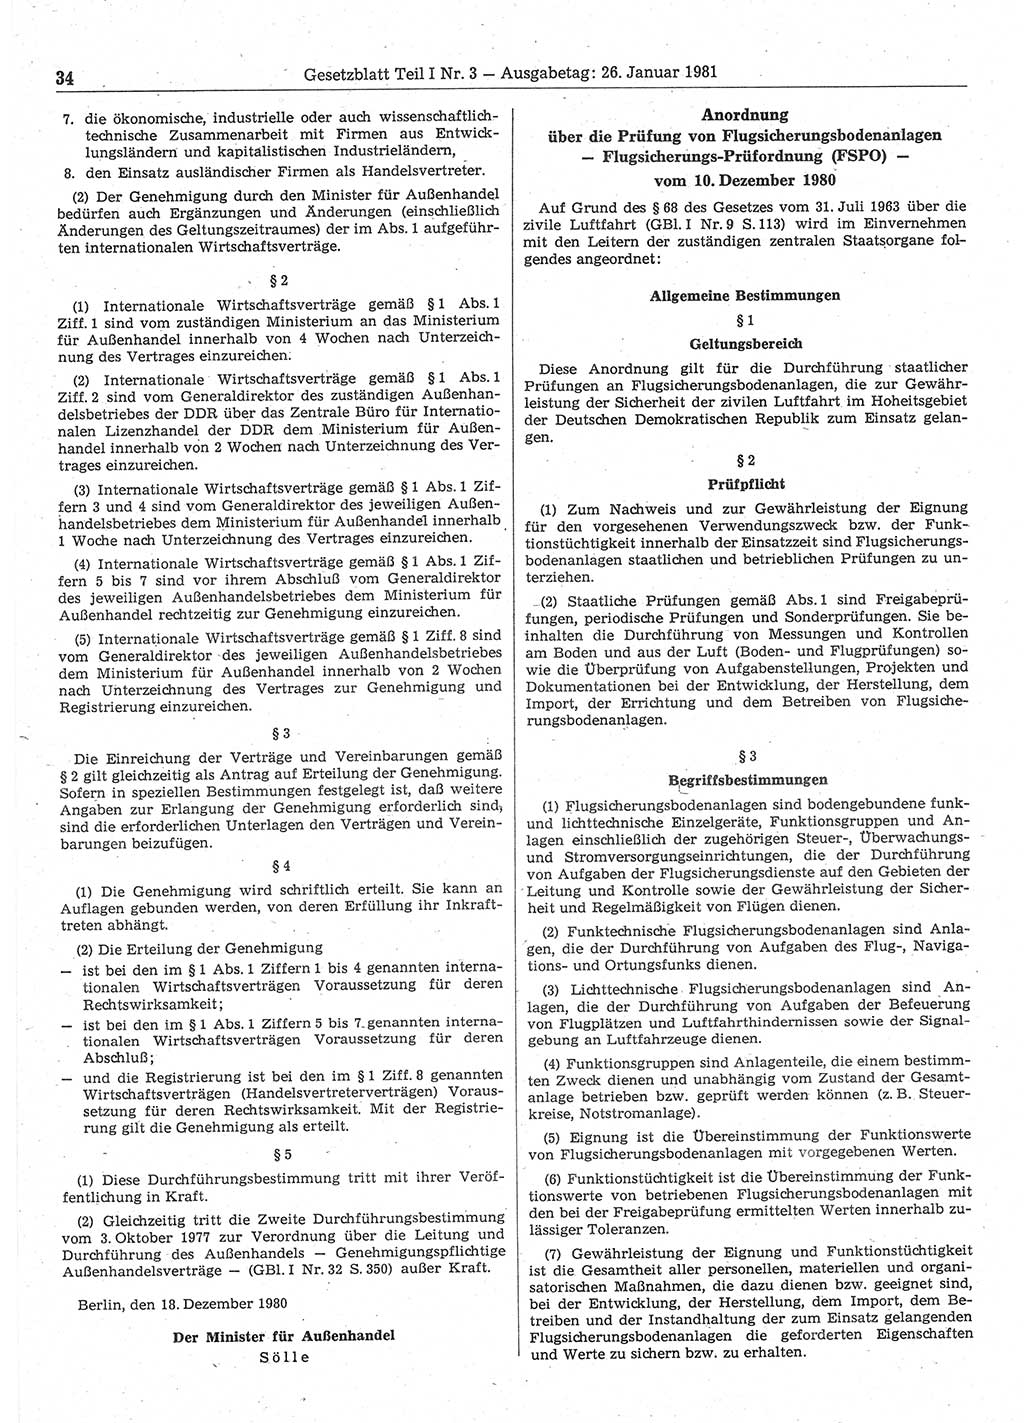 Gesetzblatt (GBl.) der Deutschen Demokratischen Republik (DDR) Teil Ⅰ 1981, Seite 34 (GBl. DDR Ⅰ 1981, S. 34)